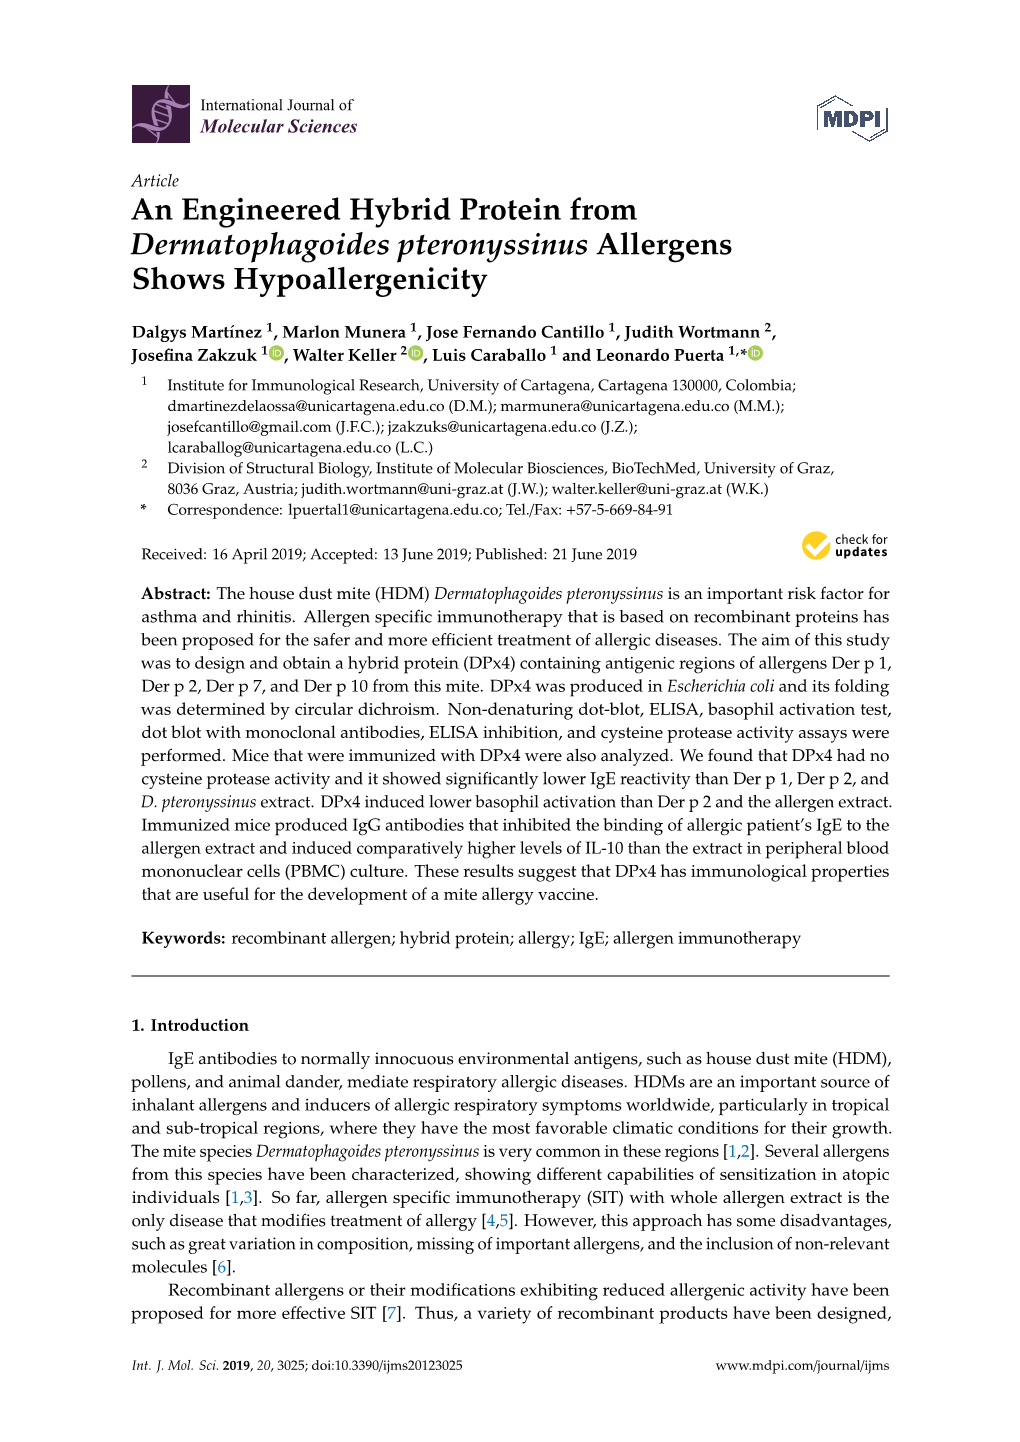 An Engineered Hybrid Protein from Dermatophagoides Pteronyssinus Allergens Shows Hypoallergenicity